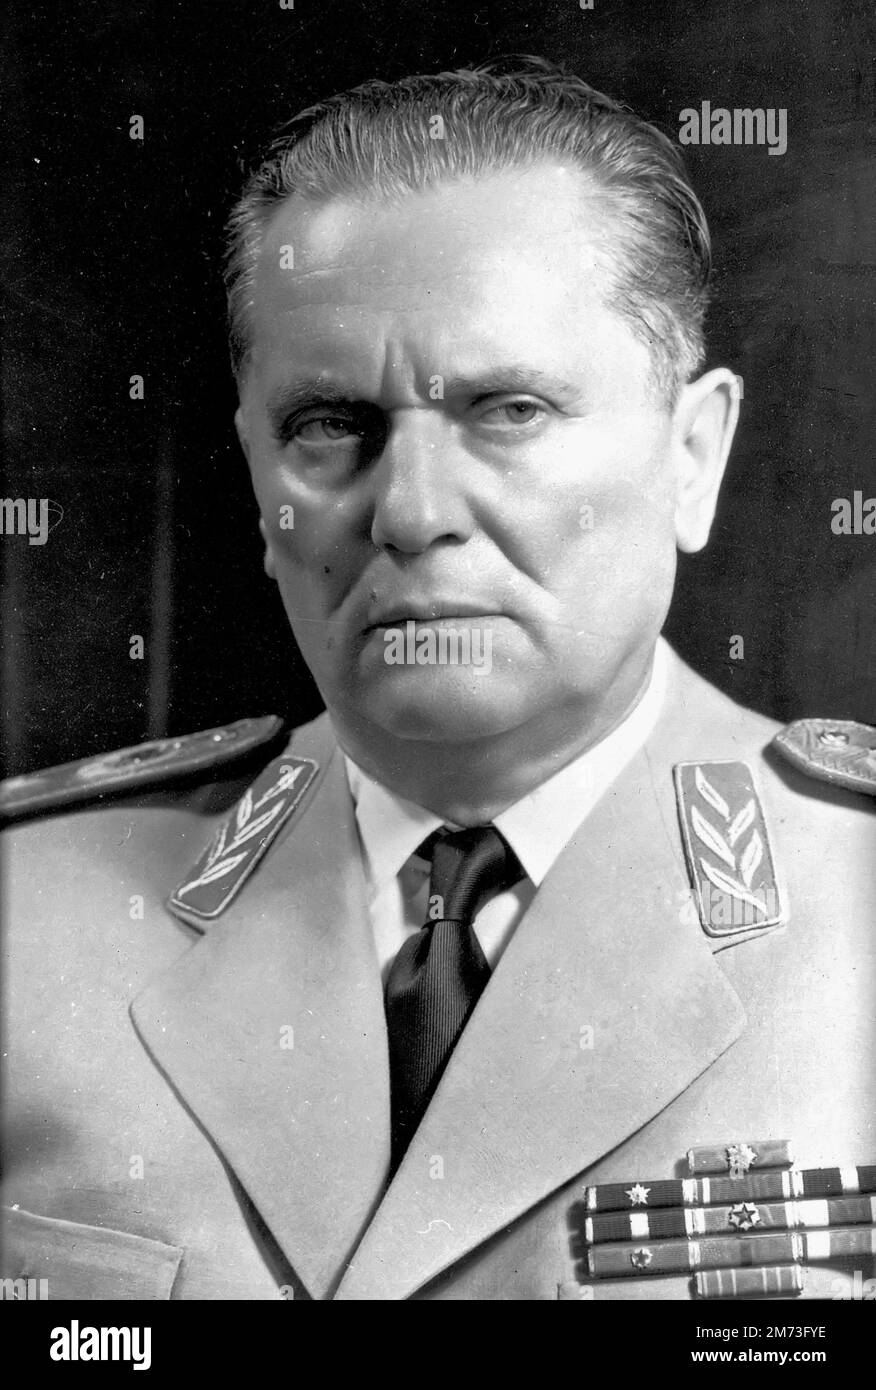 JUGOSLAVIA - 1961 - Un ritratto formale del 1961 di Josip Broz Tito che guidò i ribelli partigiani nella seconda guerra mondiale e dopo aver sconfitto i nazisti divenne il leader Foto Stock